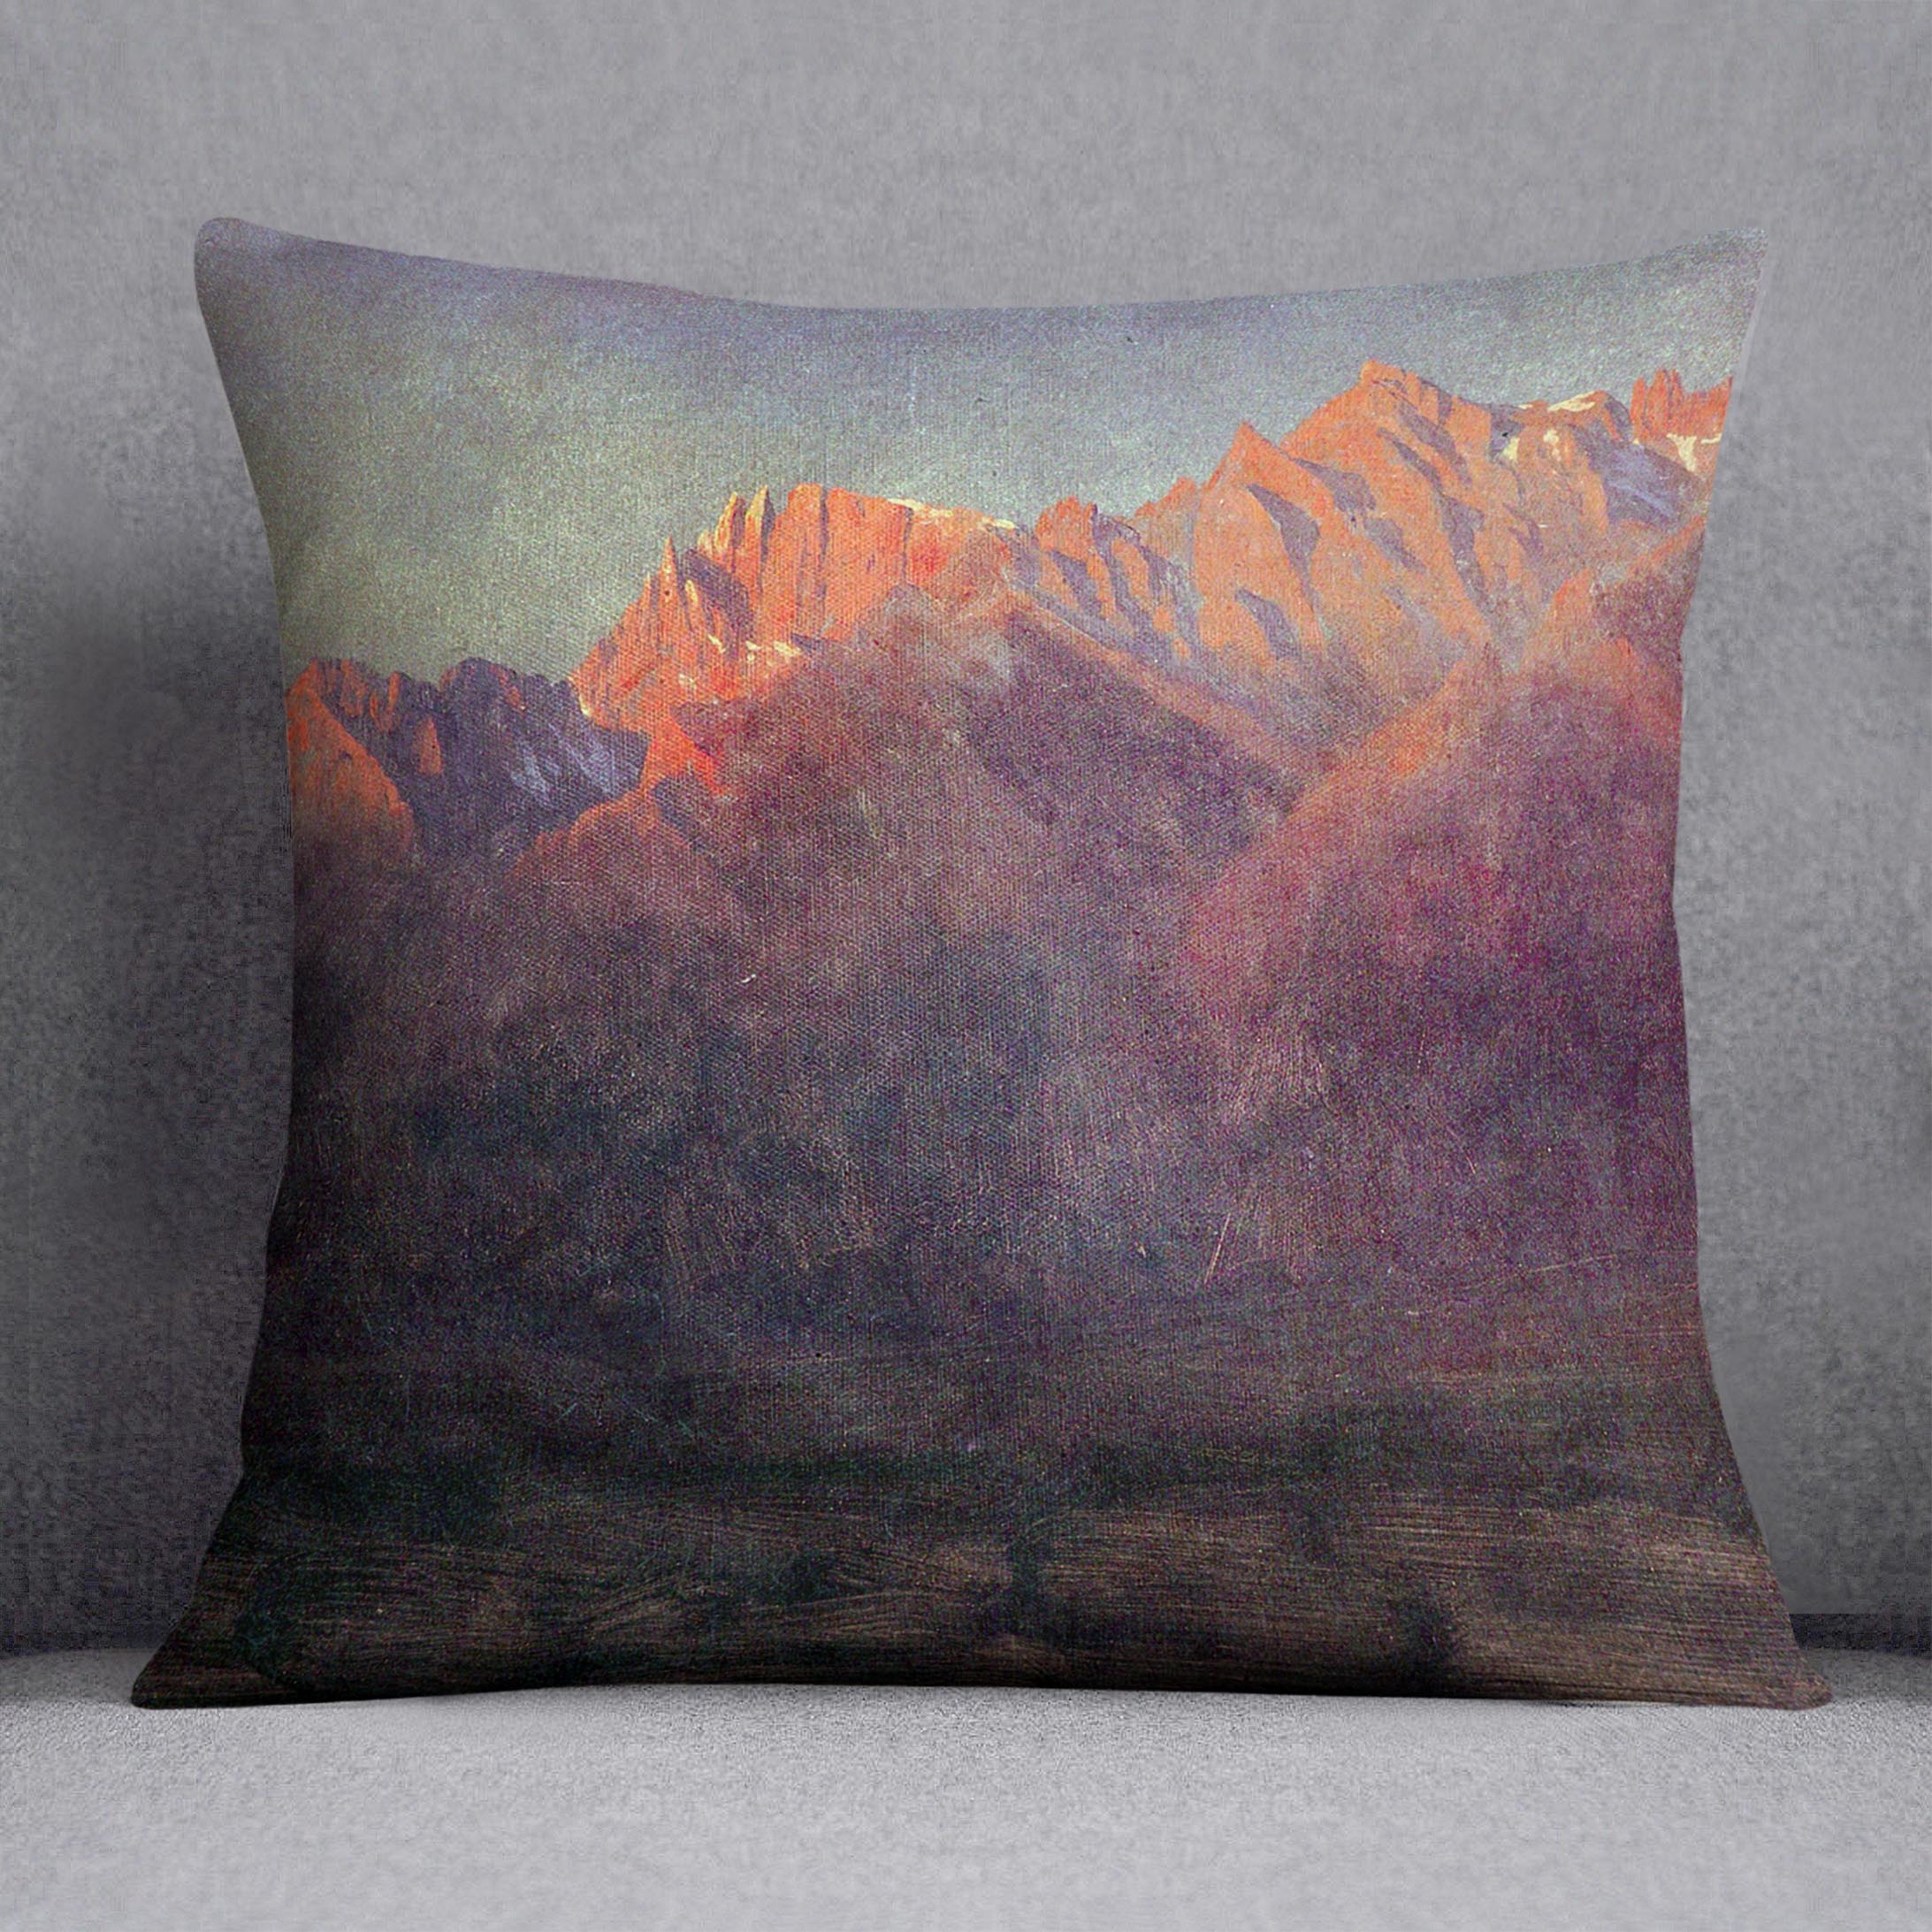 Sunrise in the Sierras by Bierstadt Cushion - Canvas Art Rocks - 1